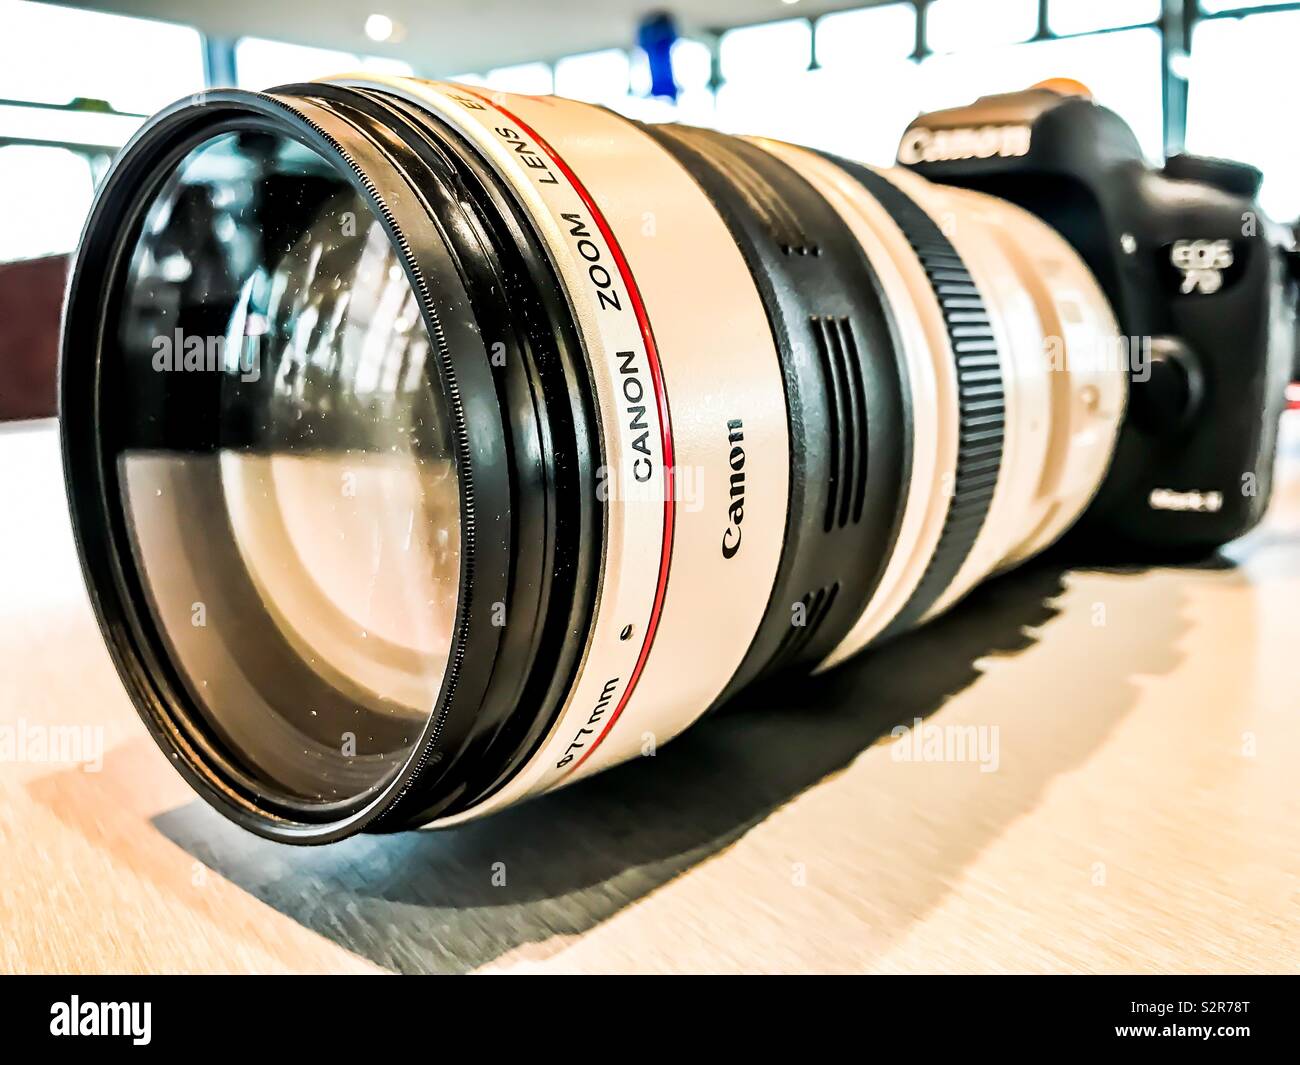 Canon EF 70-200mm f2.8 L IS USM lens on a 7D mark 2 camera Stock Photo